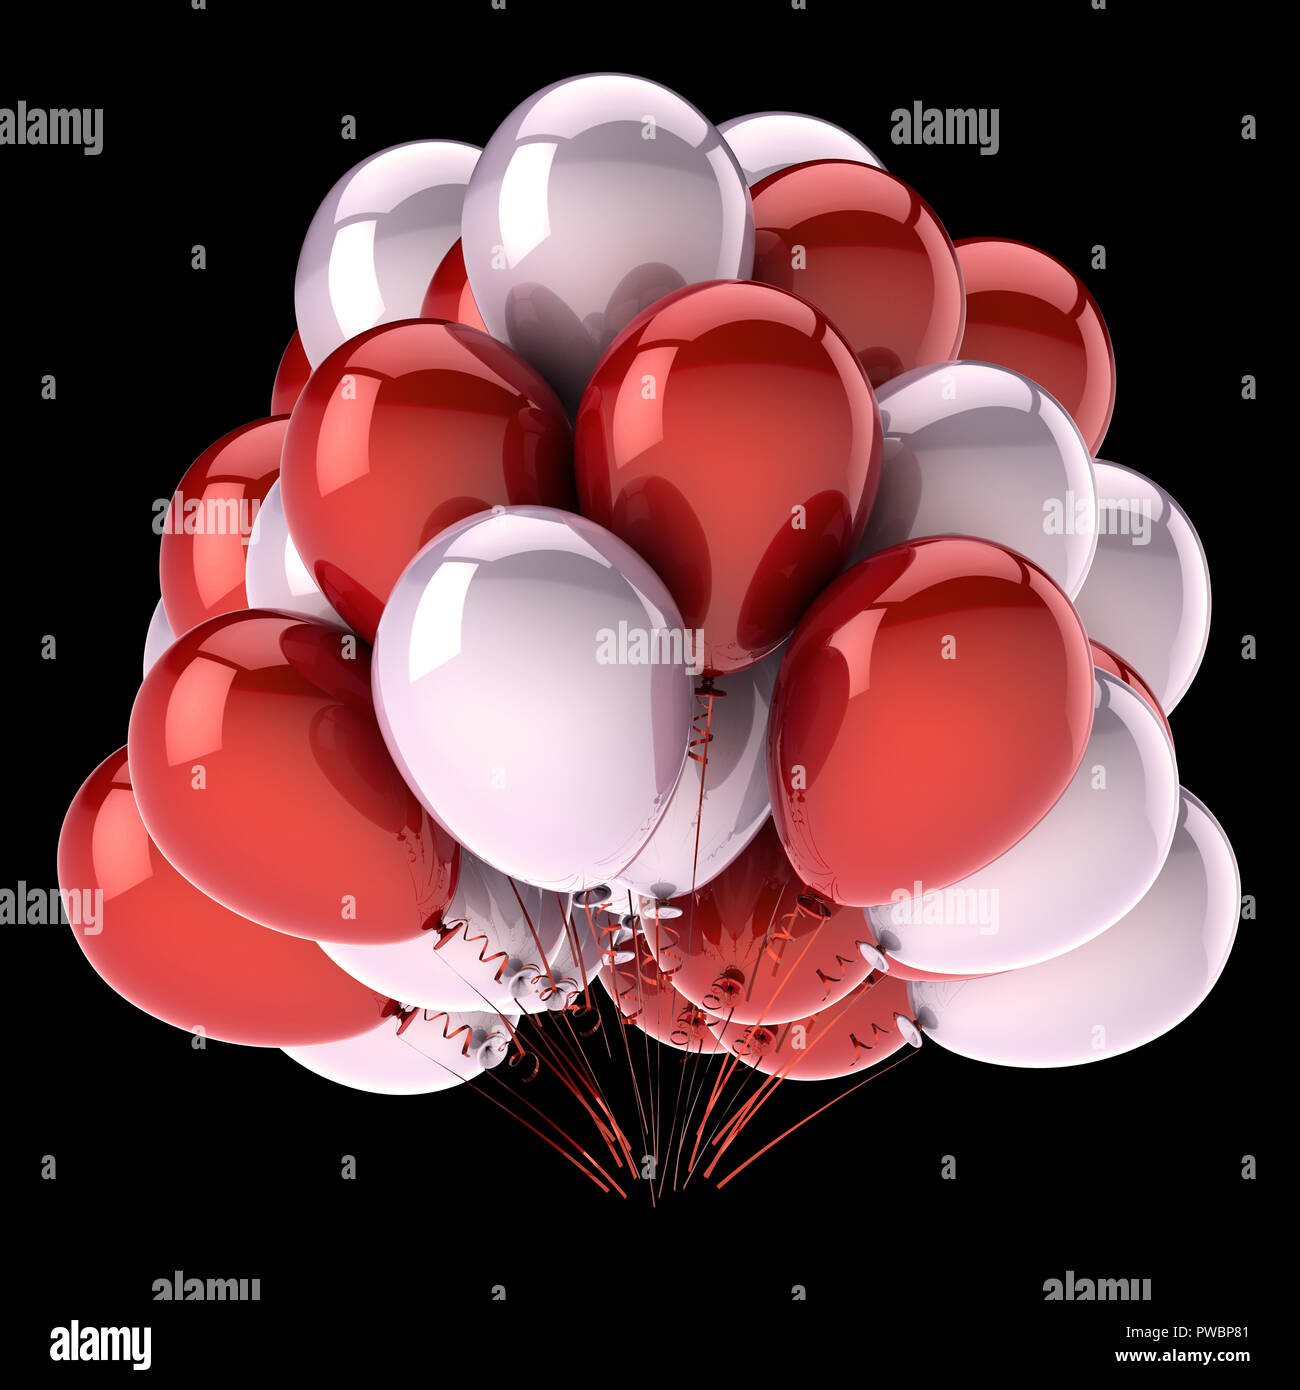 Fondo ilustracion 3d.Globos rojos.Cumpleaños,celebraciones y bodas